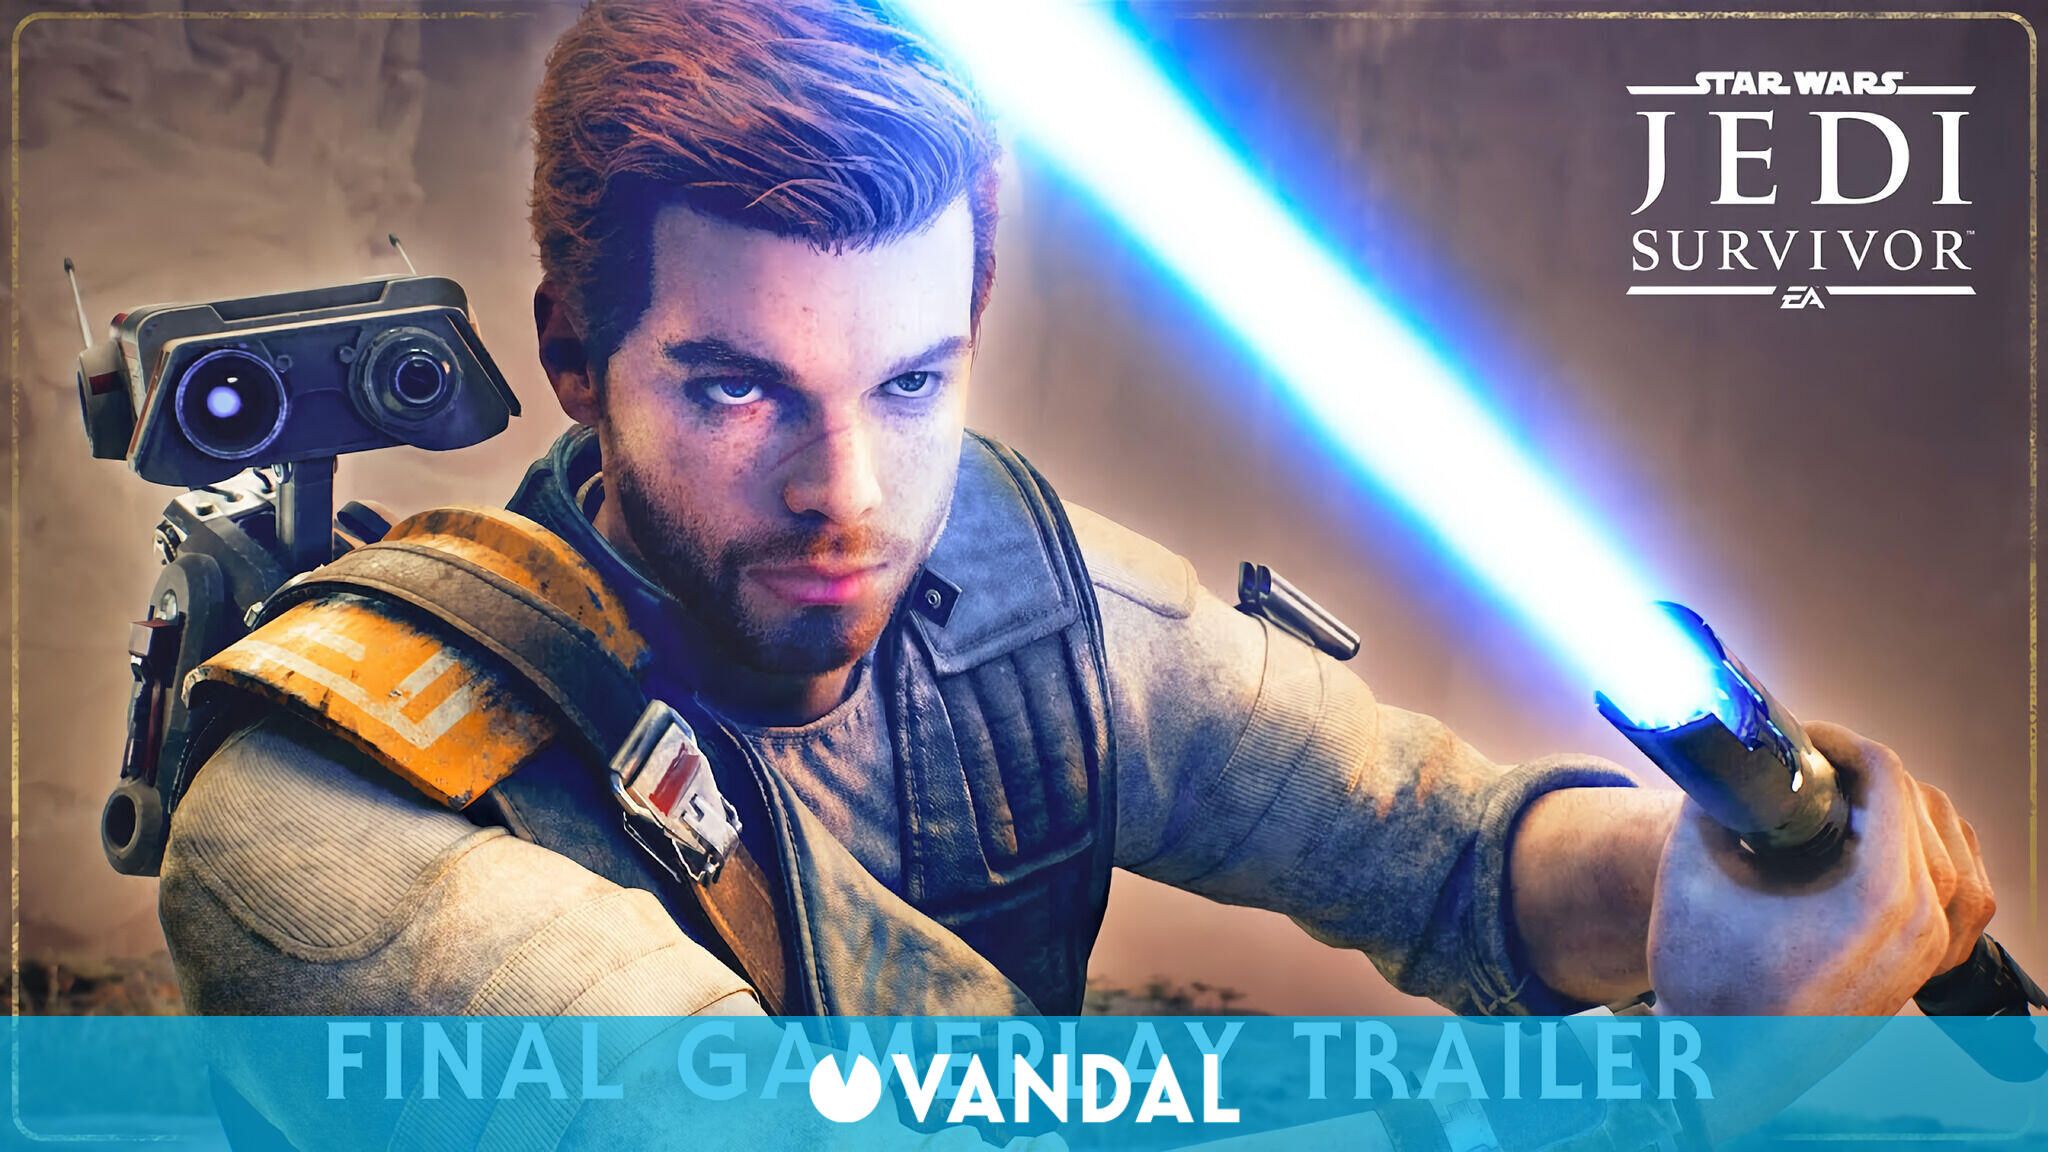 Star Wars Jedi: Survivor releases its final trailer